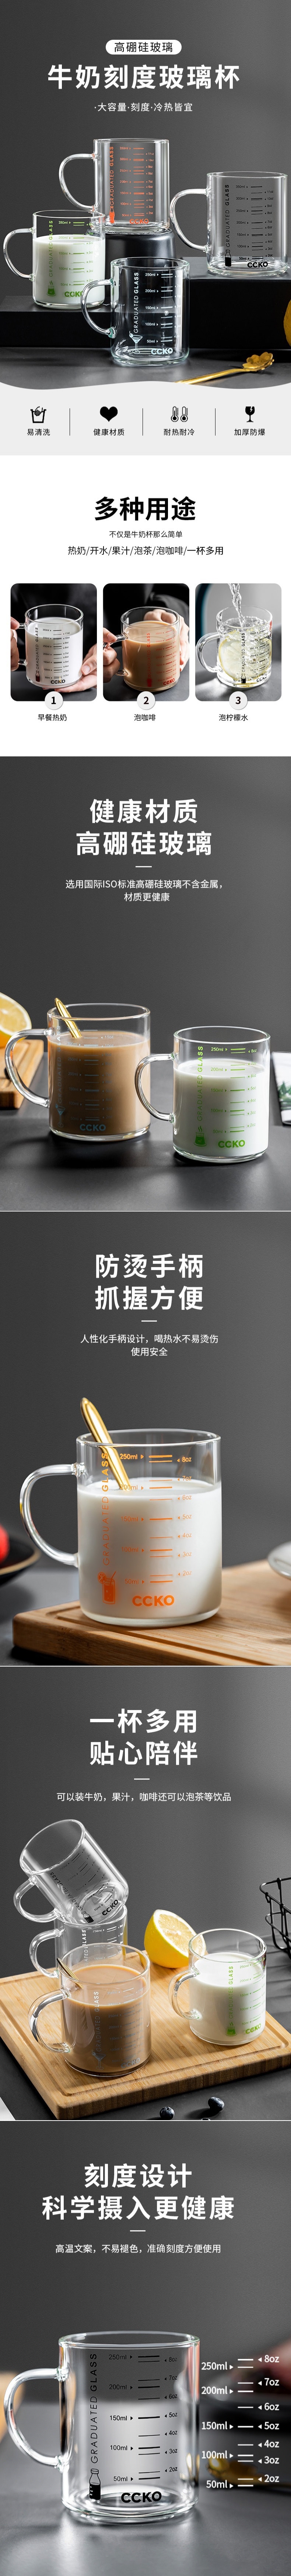 【中国直邮】刻度杯牛奶杯 加厚耐高温微波炉适用 350mlx2只 刻度颜色随机 泡茶热奶泡咖啡一杯多用